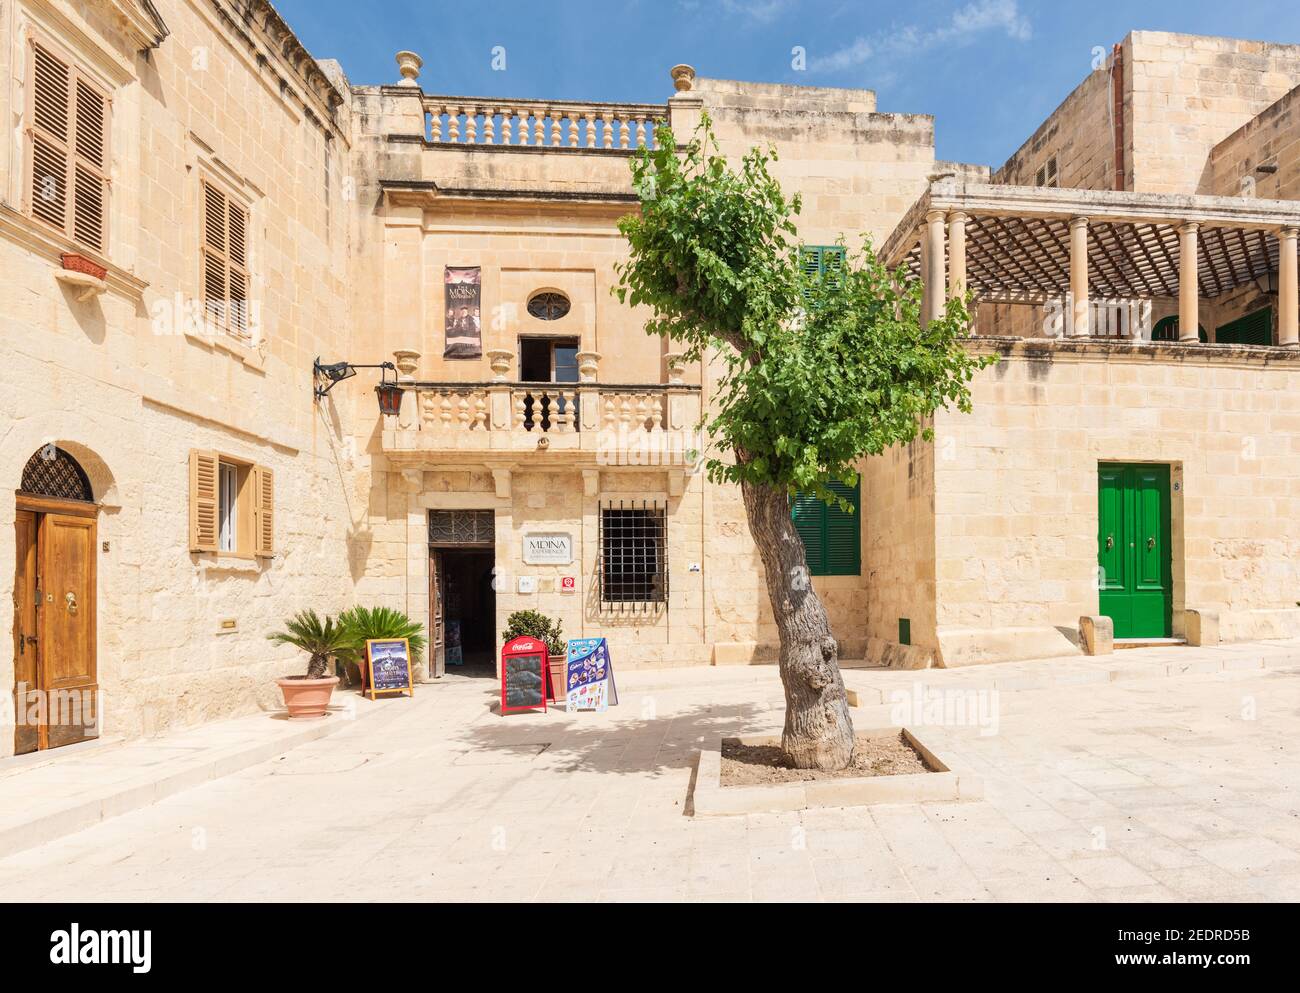 Le centre d'expérience Mdina une attraction touristique sur la place Mesquita Mdina Malte Banque D'Images